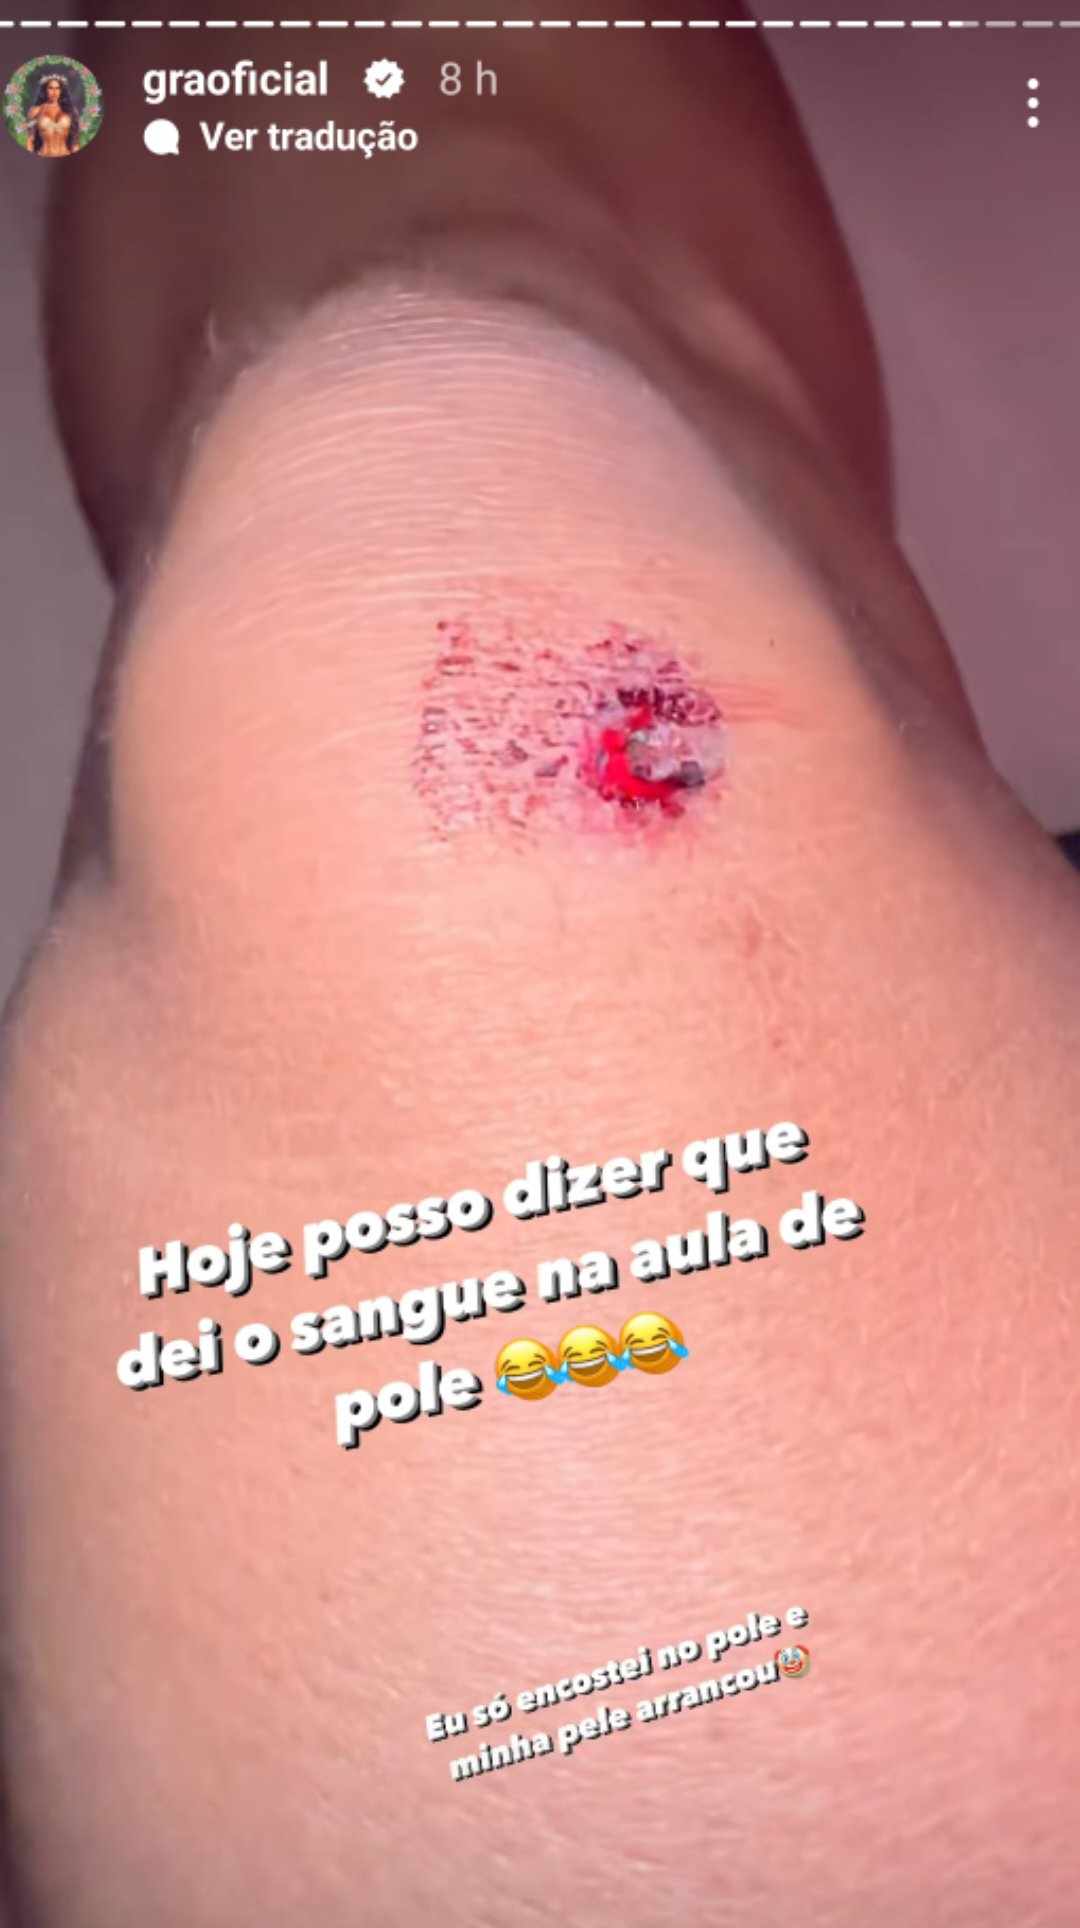 Gracyanne Barbosa machucado